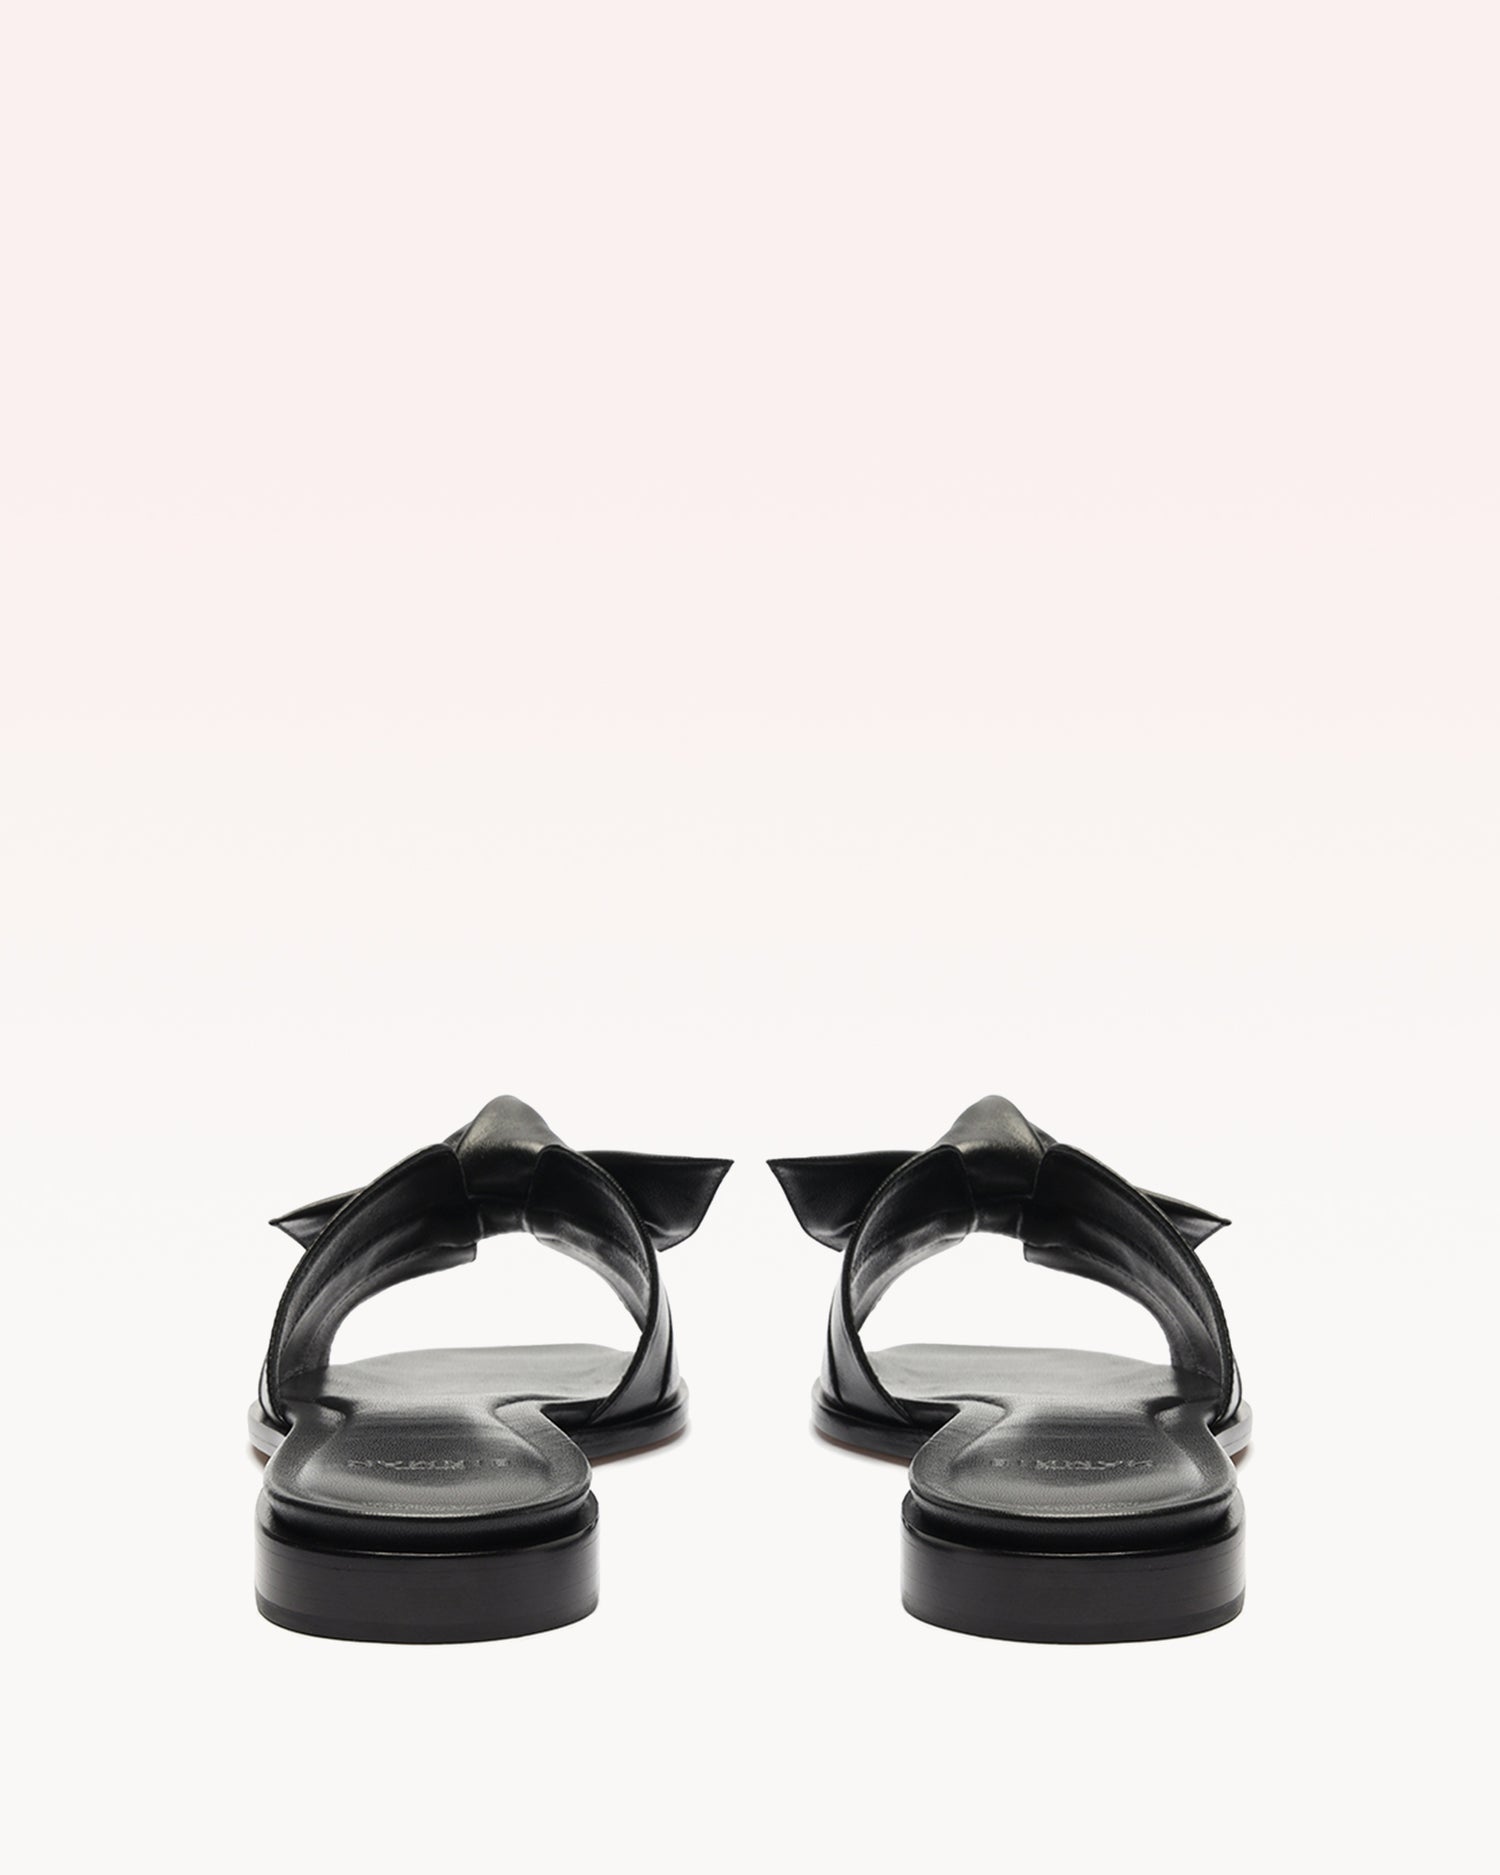 Maxi Clarita Square Flat Black Sandals R/24   